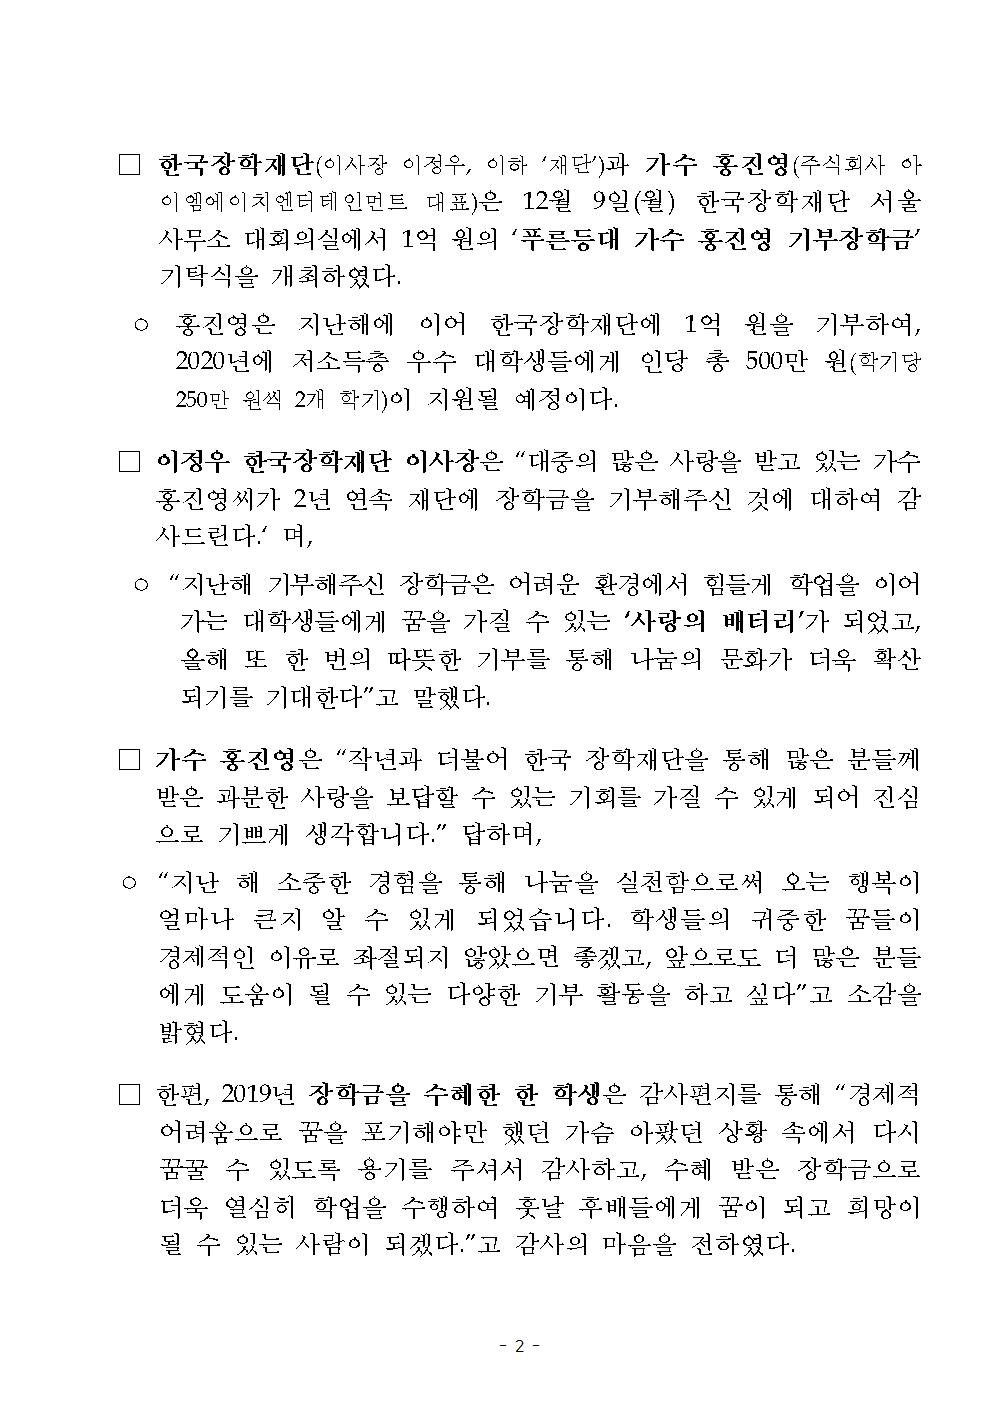 12-09(월)[보도자료] 가수 홍진영, 2년 연속 한국장학재단 장학금 1억 원 기부002.jpg